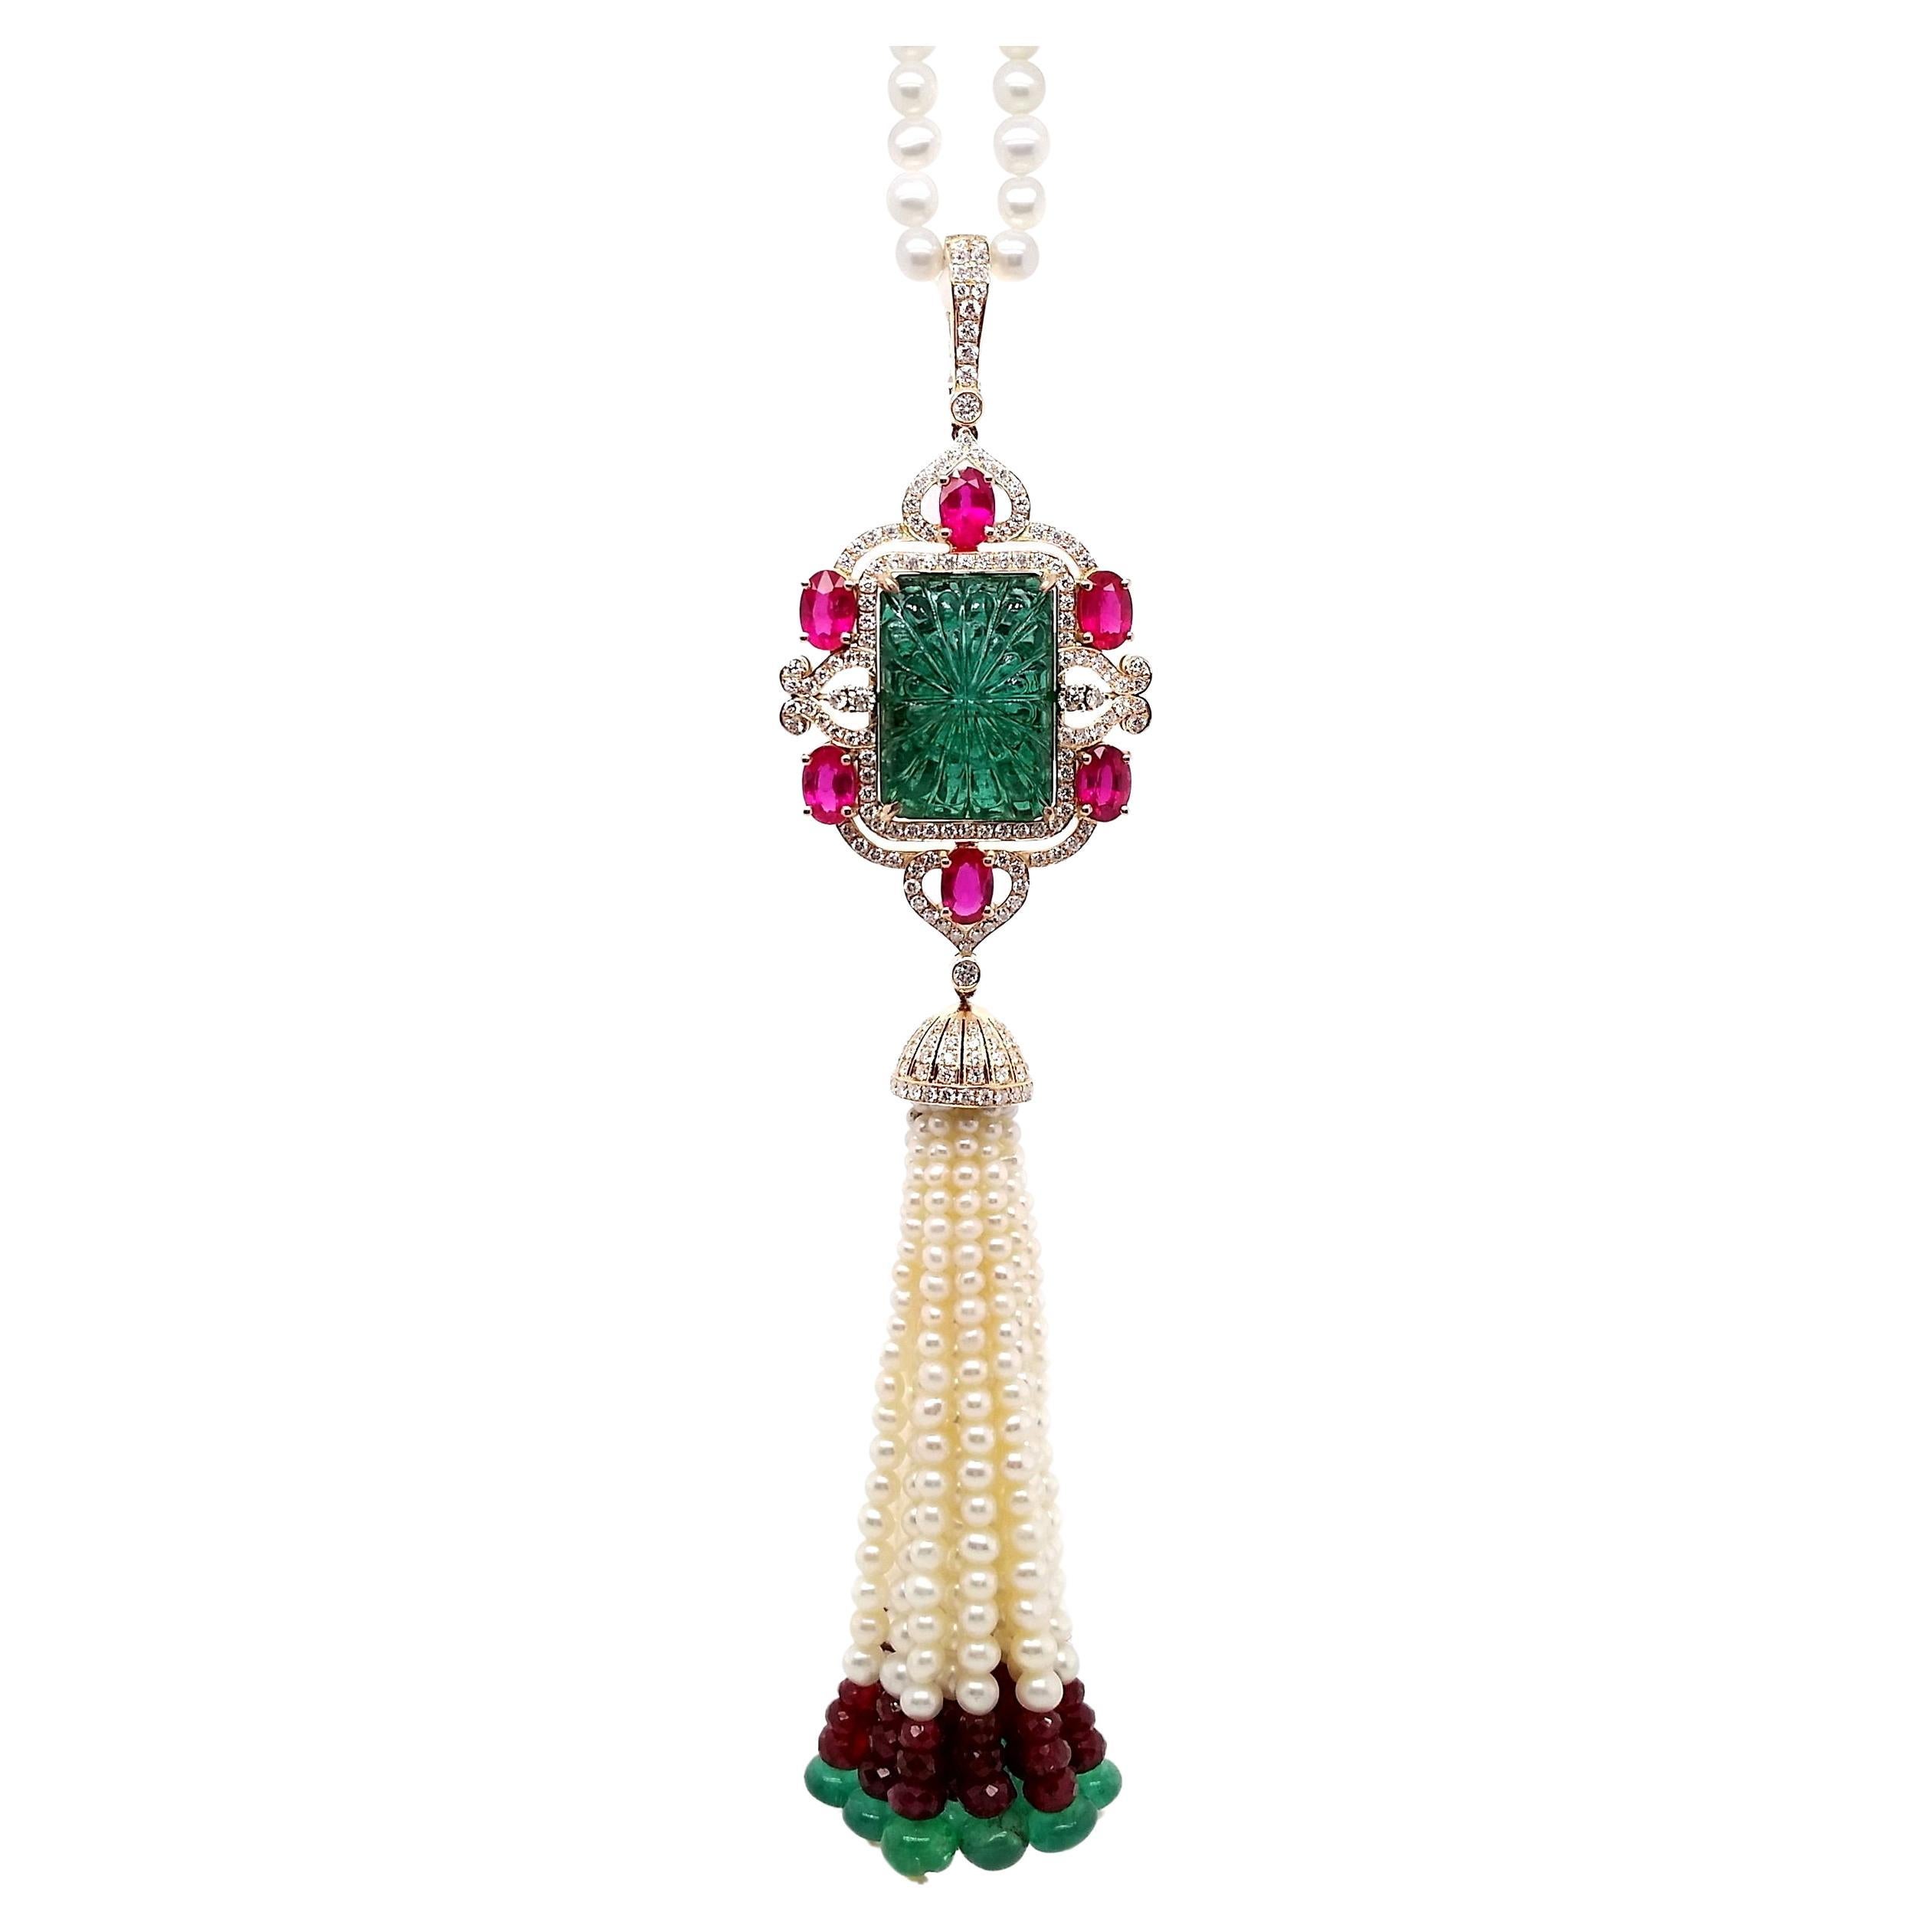 Halskette mit IGI-zertifiziertem 30,86 Karat Smaragd 23,65 Karat Rubine 1,52 Karat Diamanten und Perlen